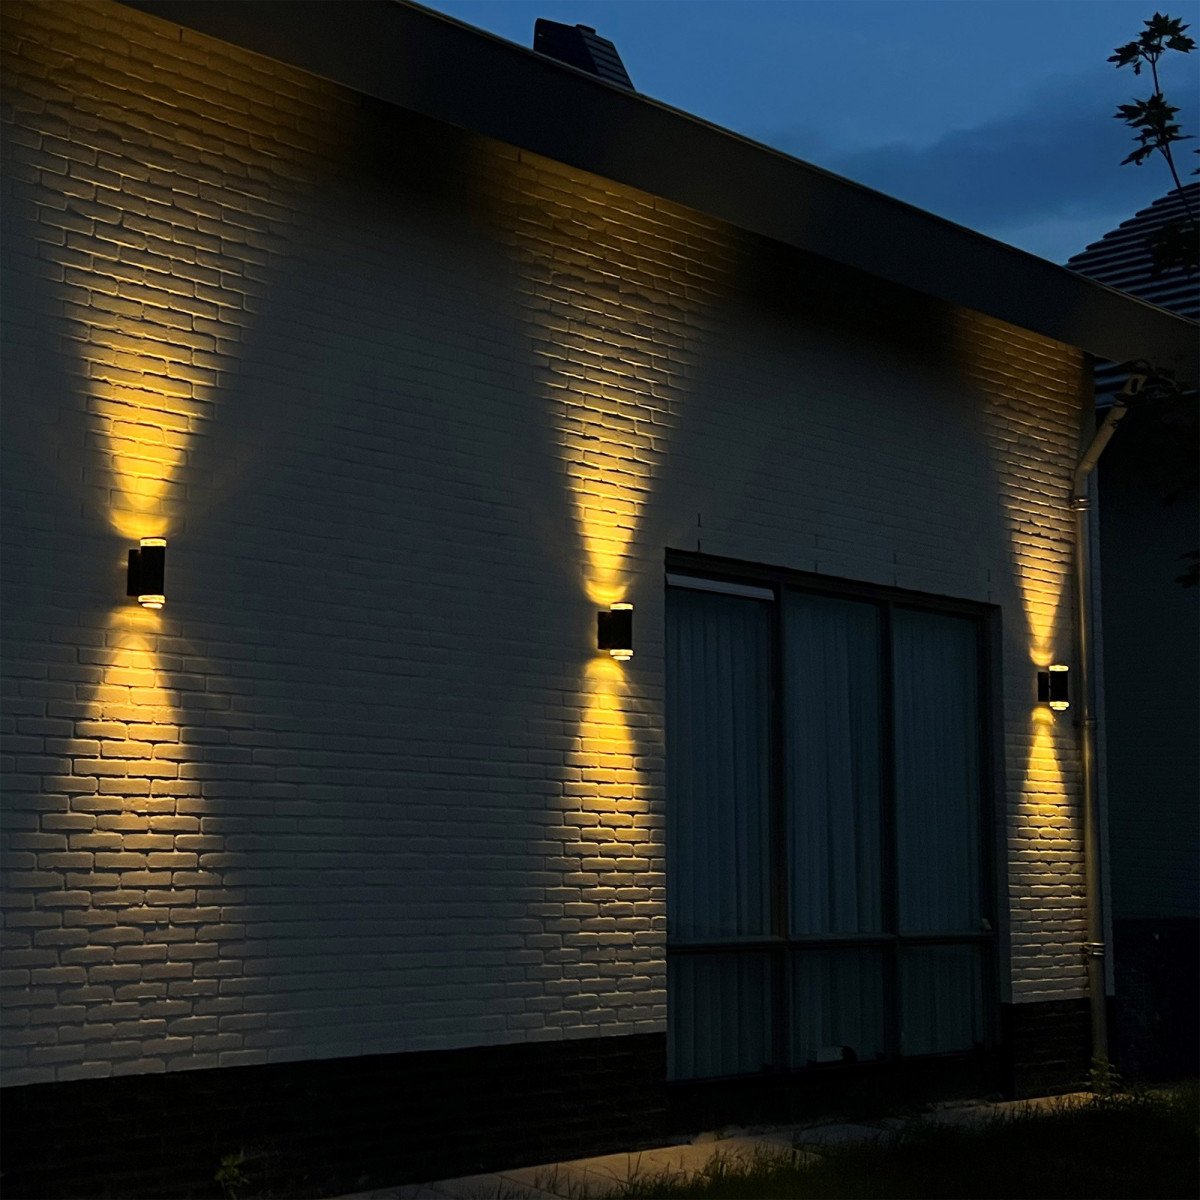 Wandspot verzinkt Up en downlighter, stijlvolle modern vormgegeven wandverlichting van KS Verlichting